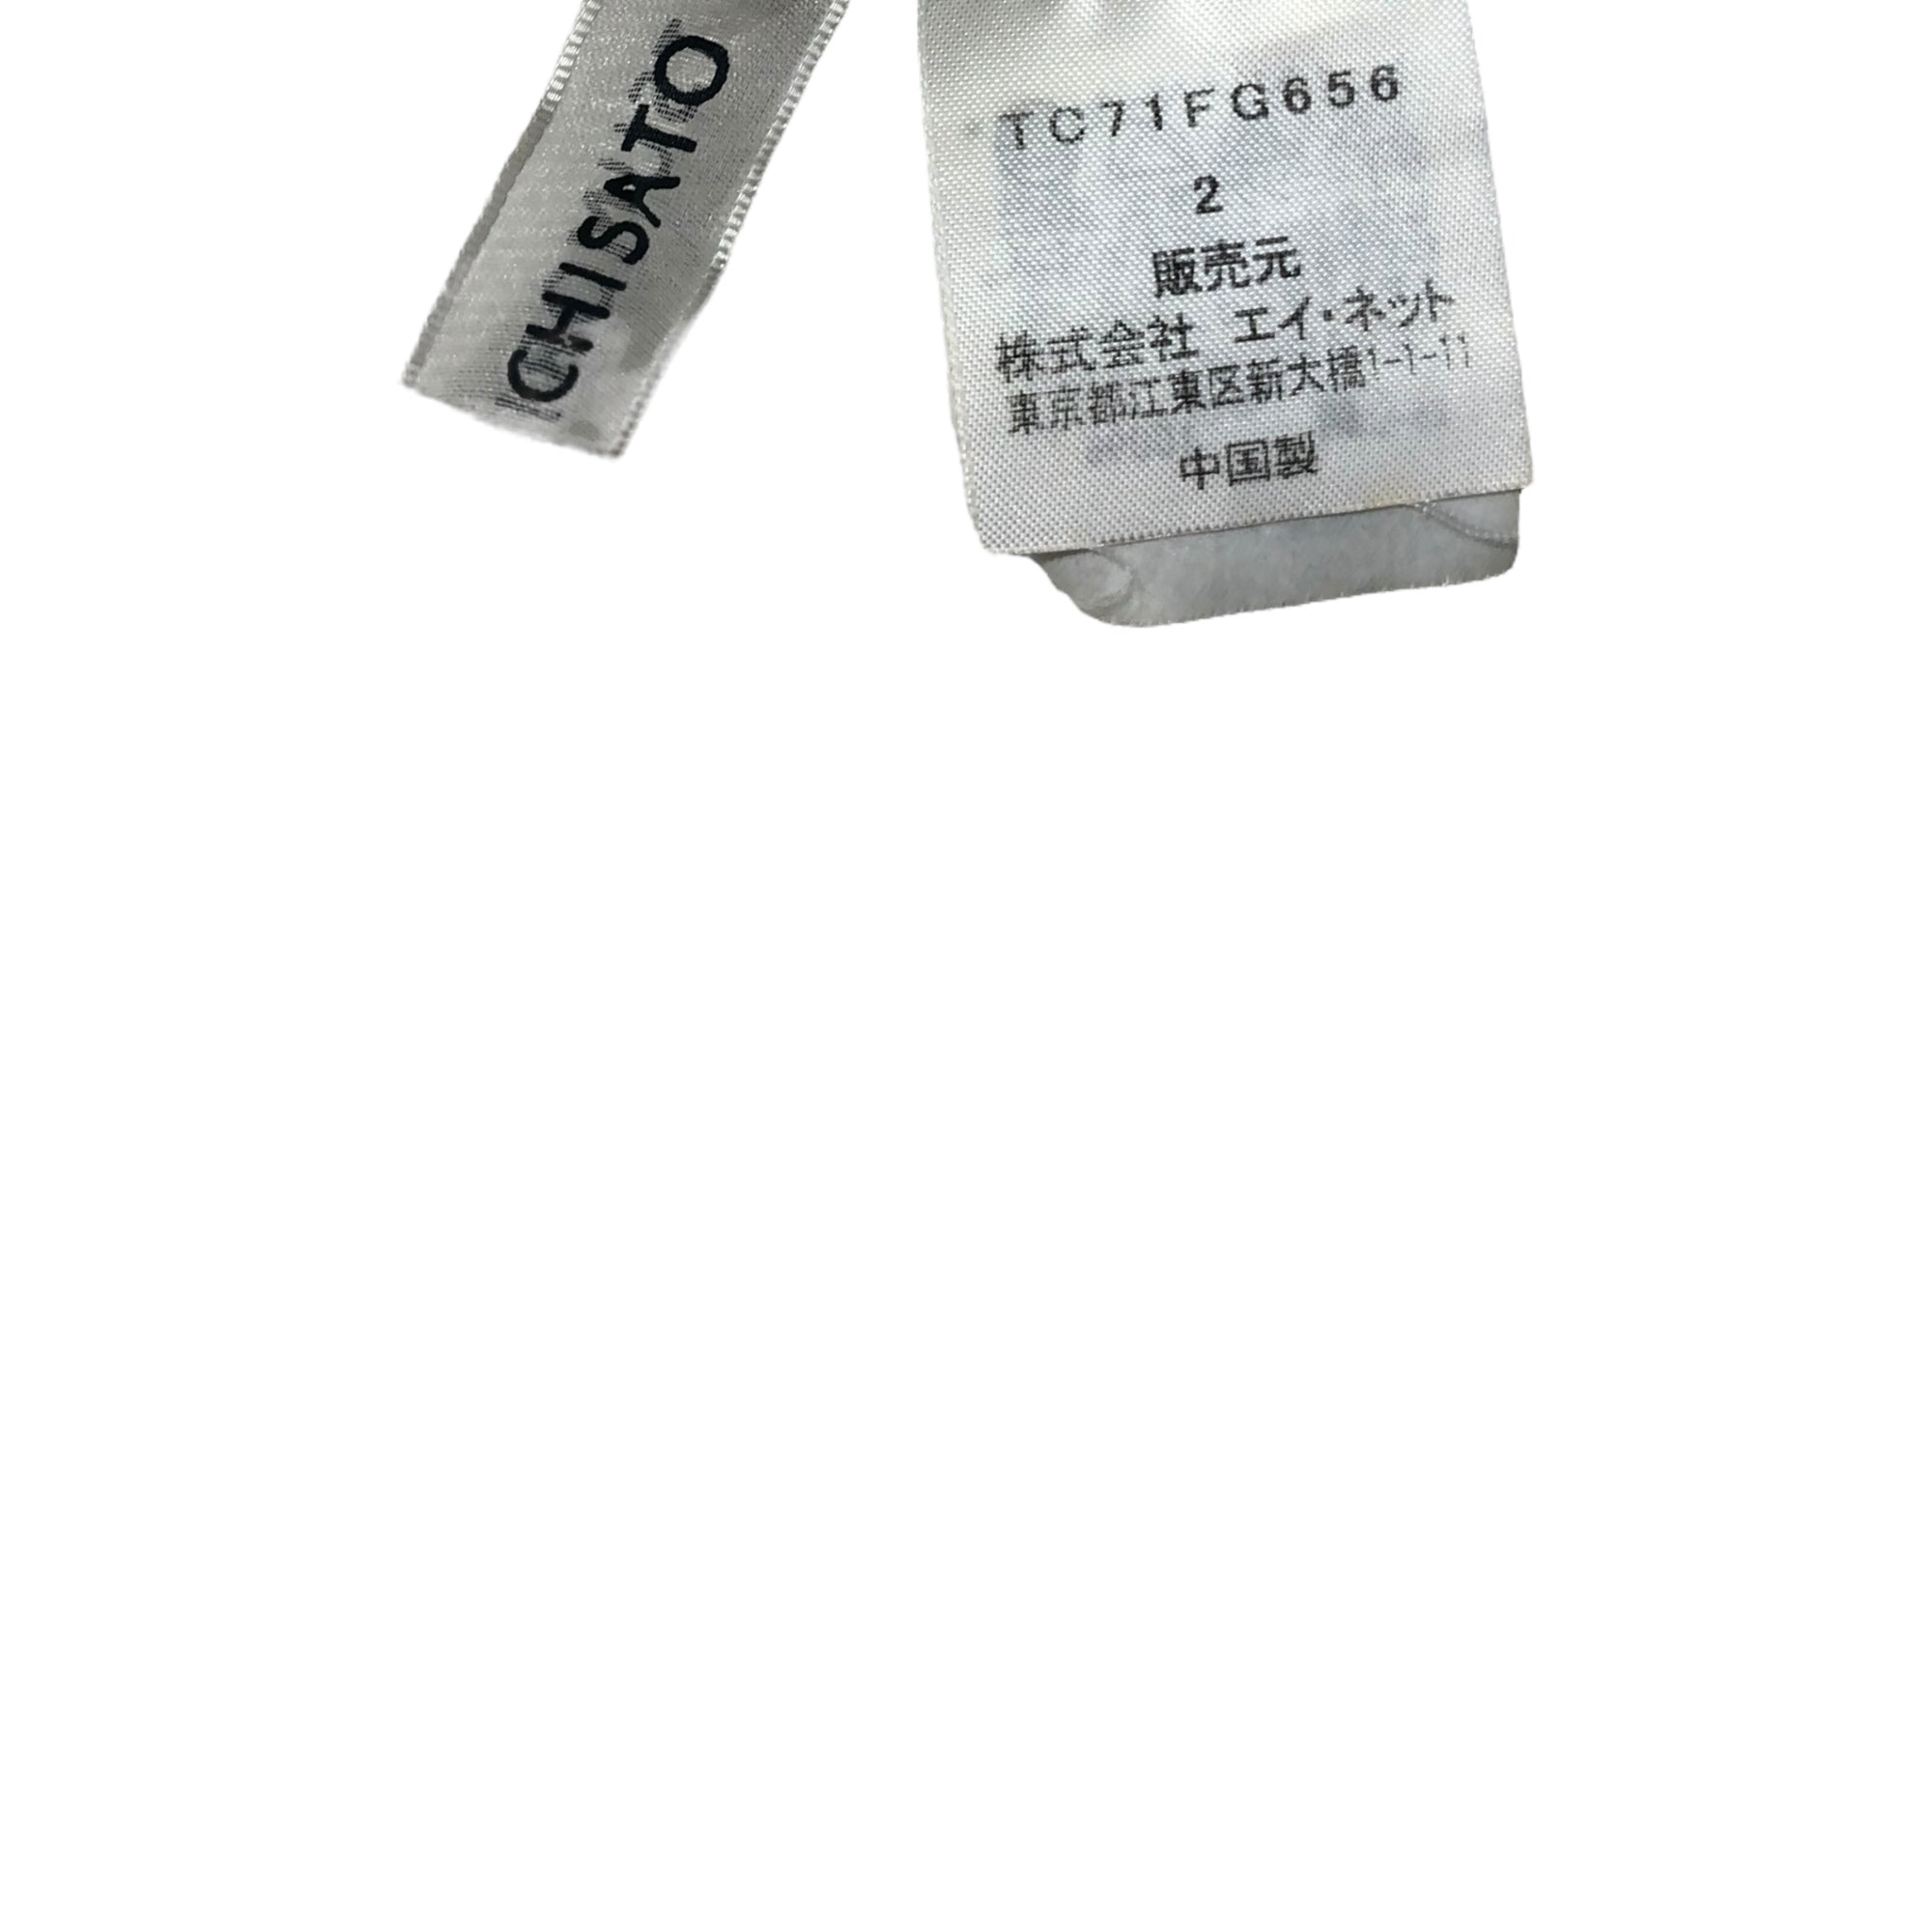 TSUMORI CHISATO(ツモリチサト) 07SSシルクスカート TC71FG656 2(M) ベージュ